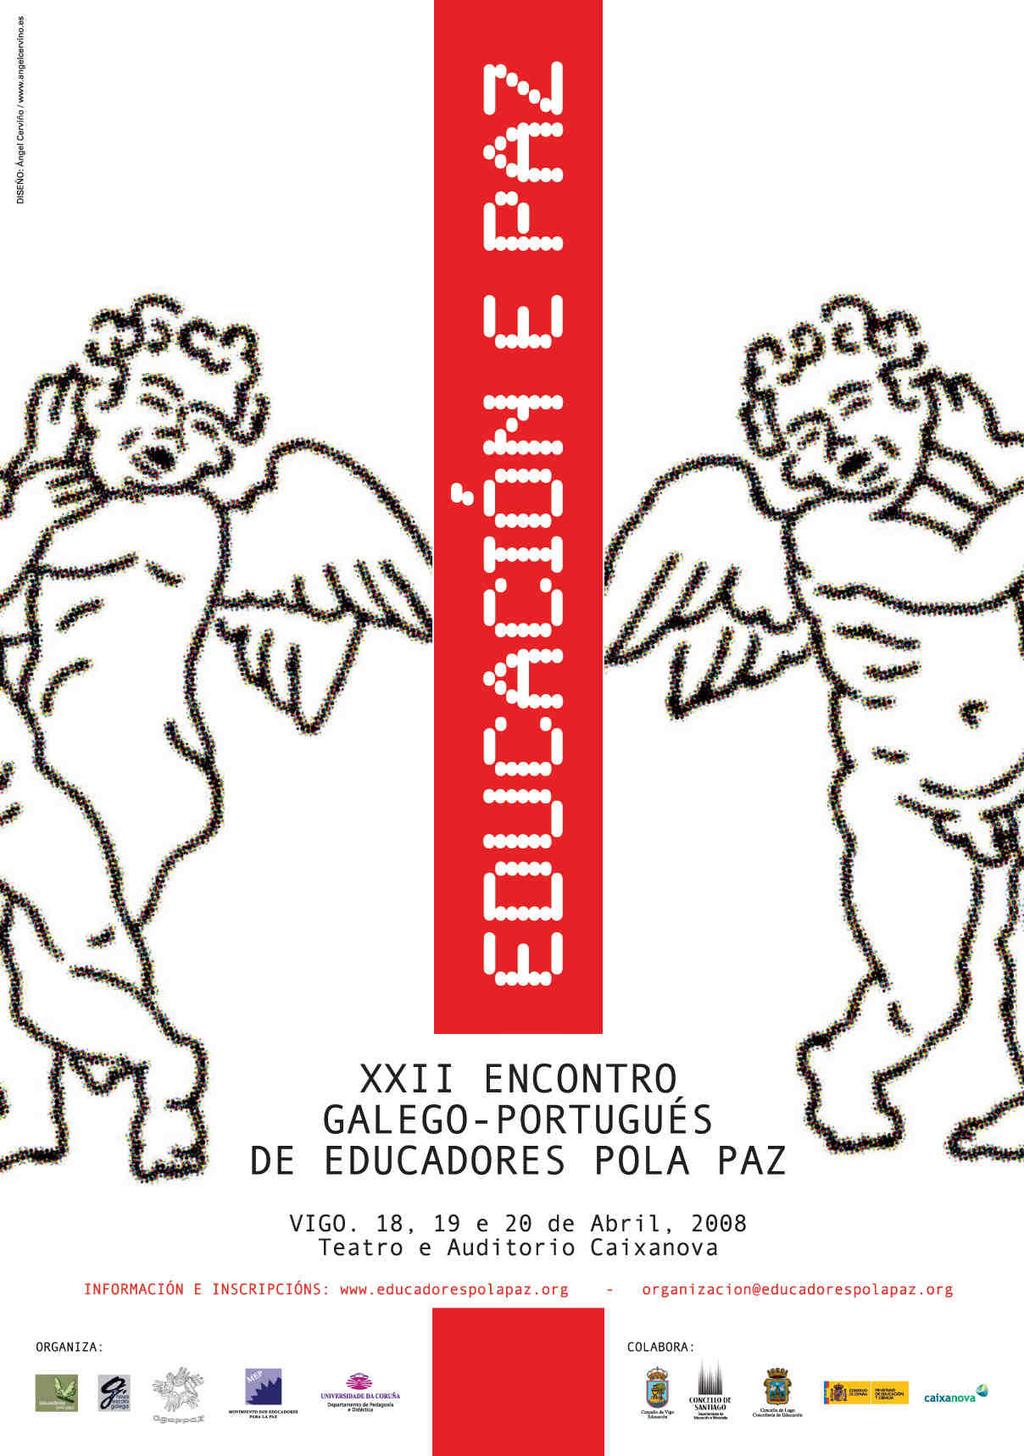 XXII ENCONTRO GALEGO-PORTUGU PORTUGUÉS S DE EDUCADORES POLA PAZ,